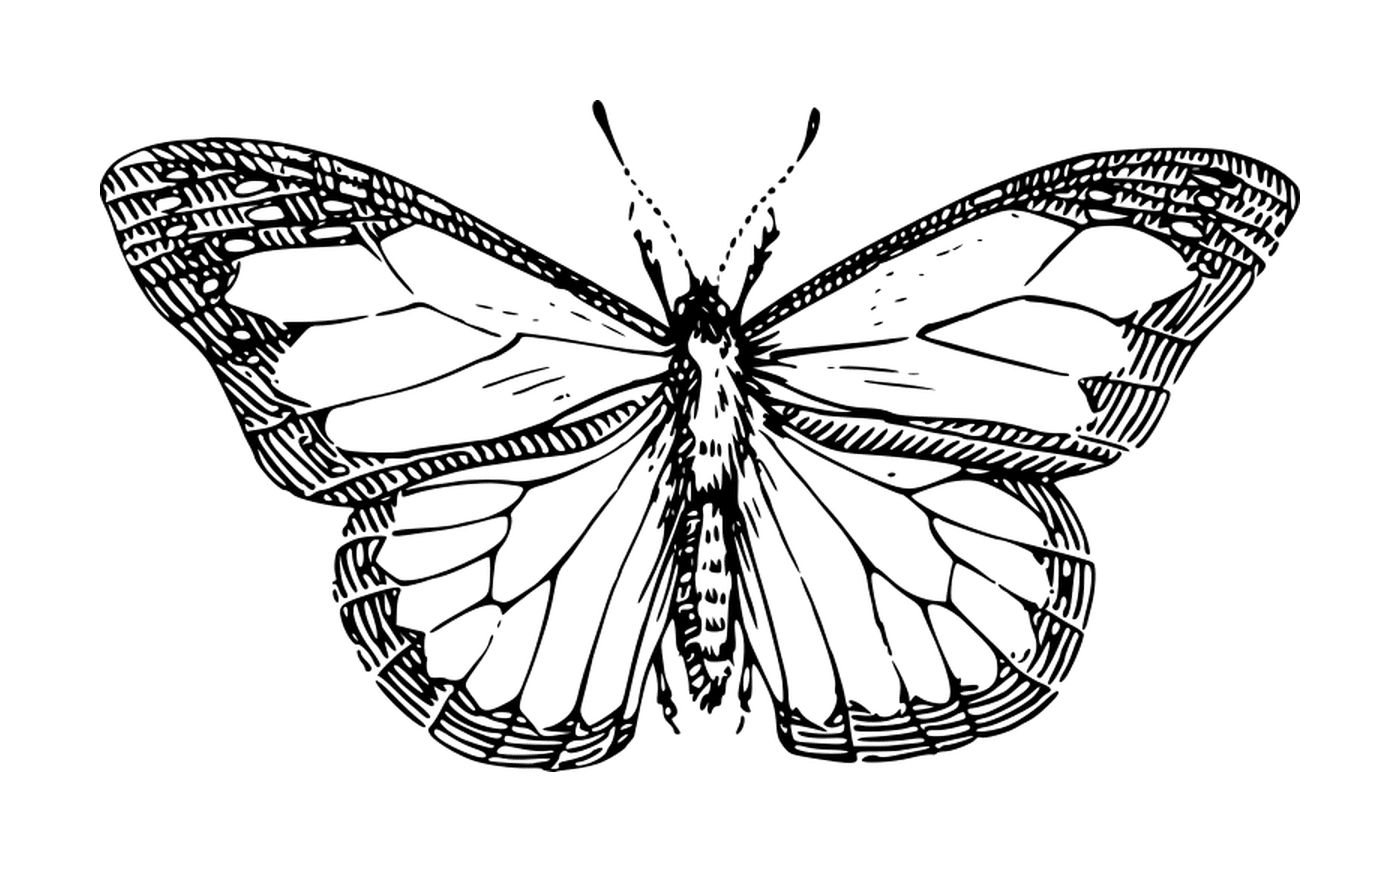  Mariposa delicada con patrones únicos 